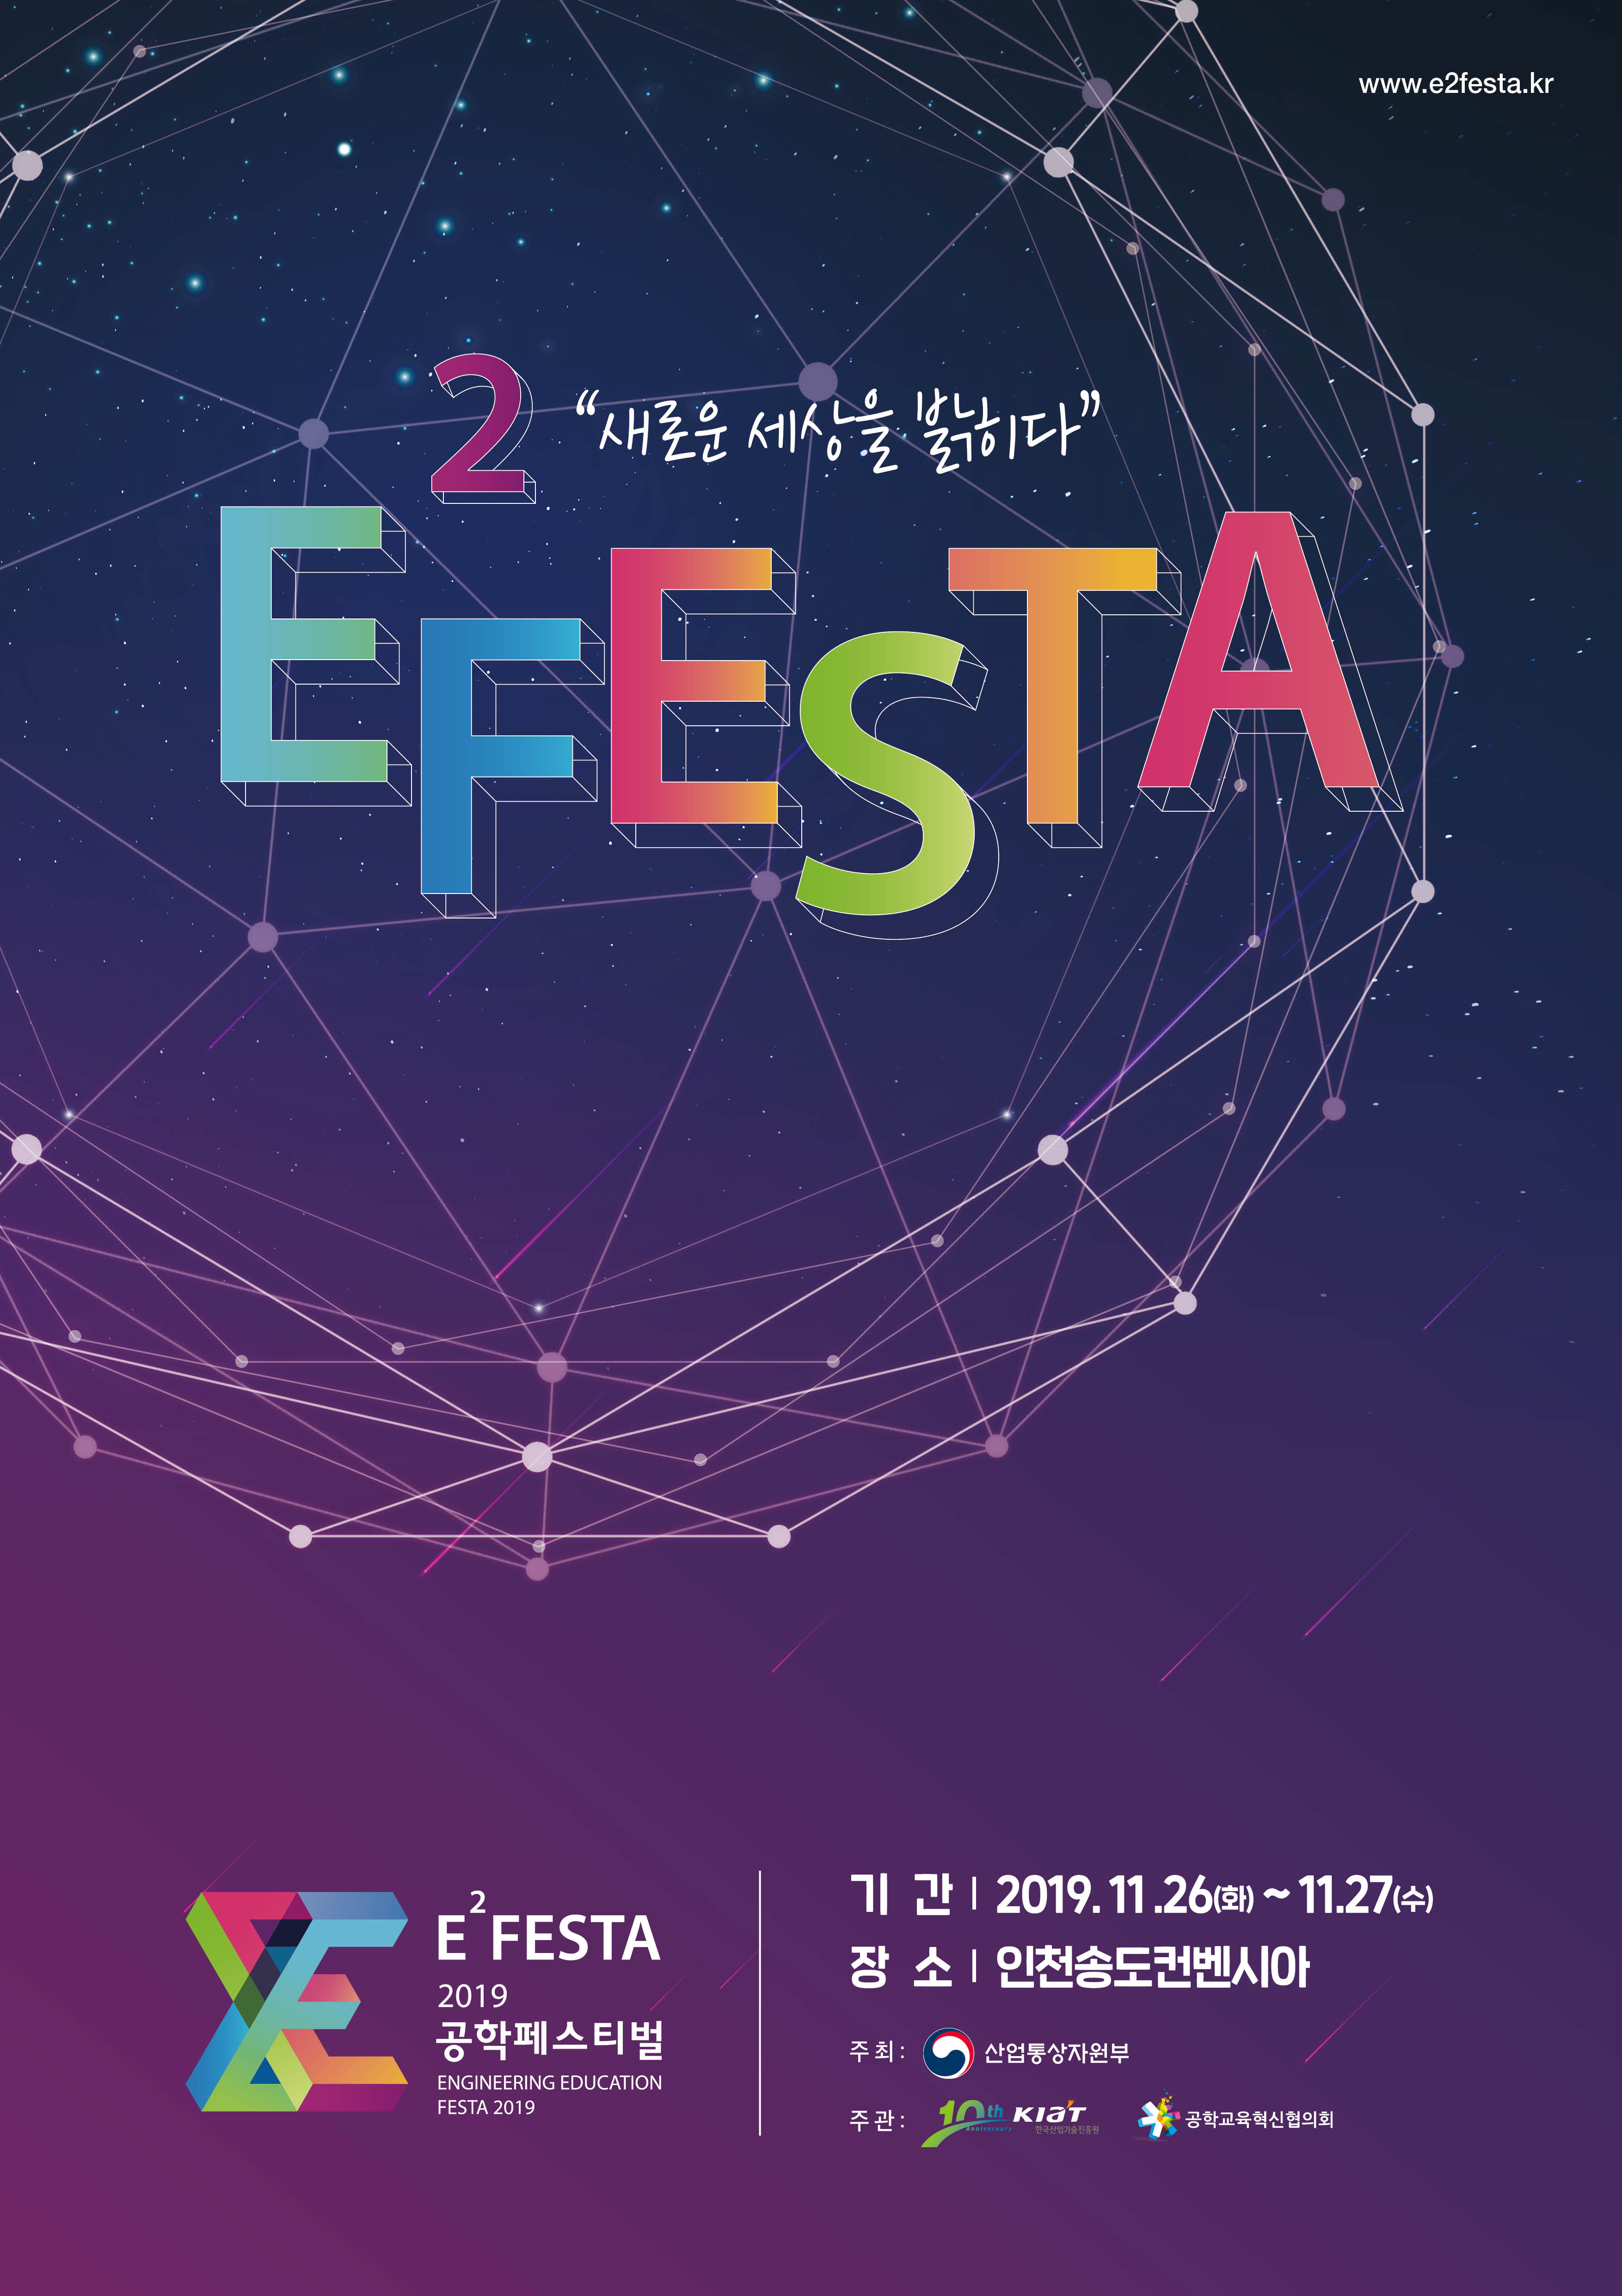 2019 공학페스티벌 E2FESTA